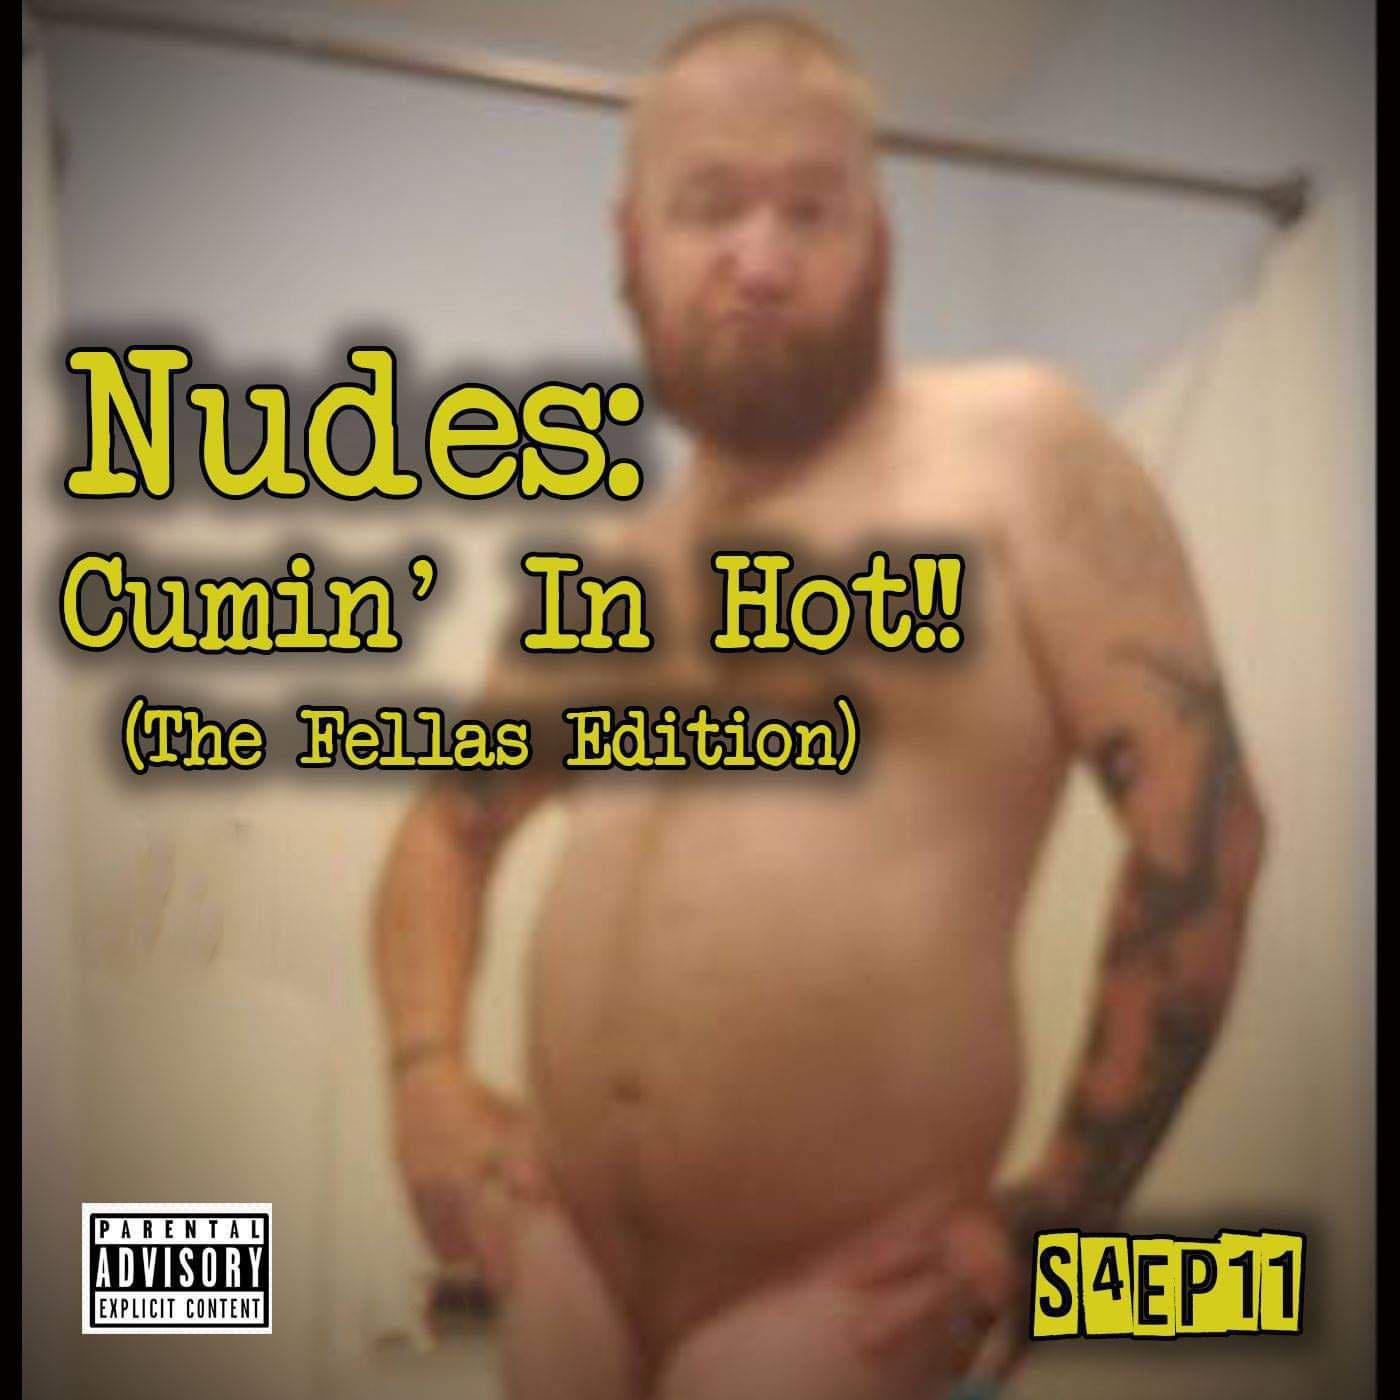 Nudes: The Fellas Edition